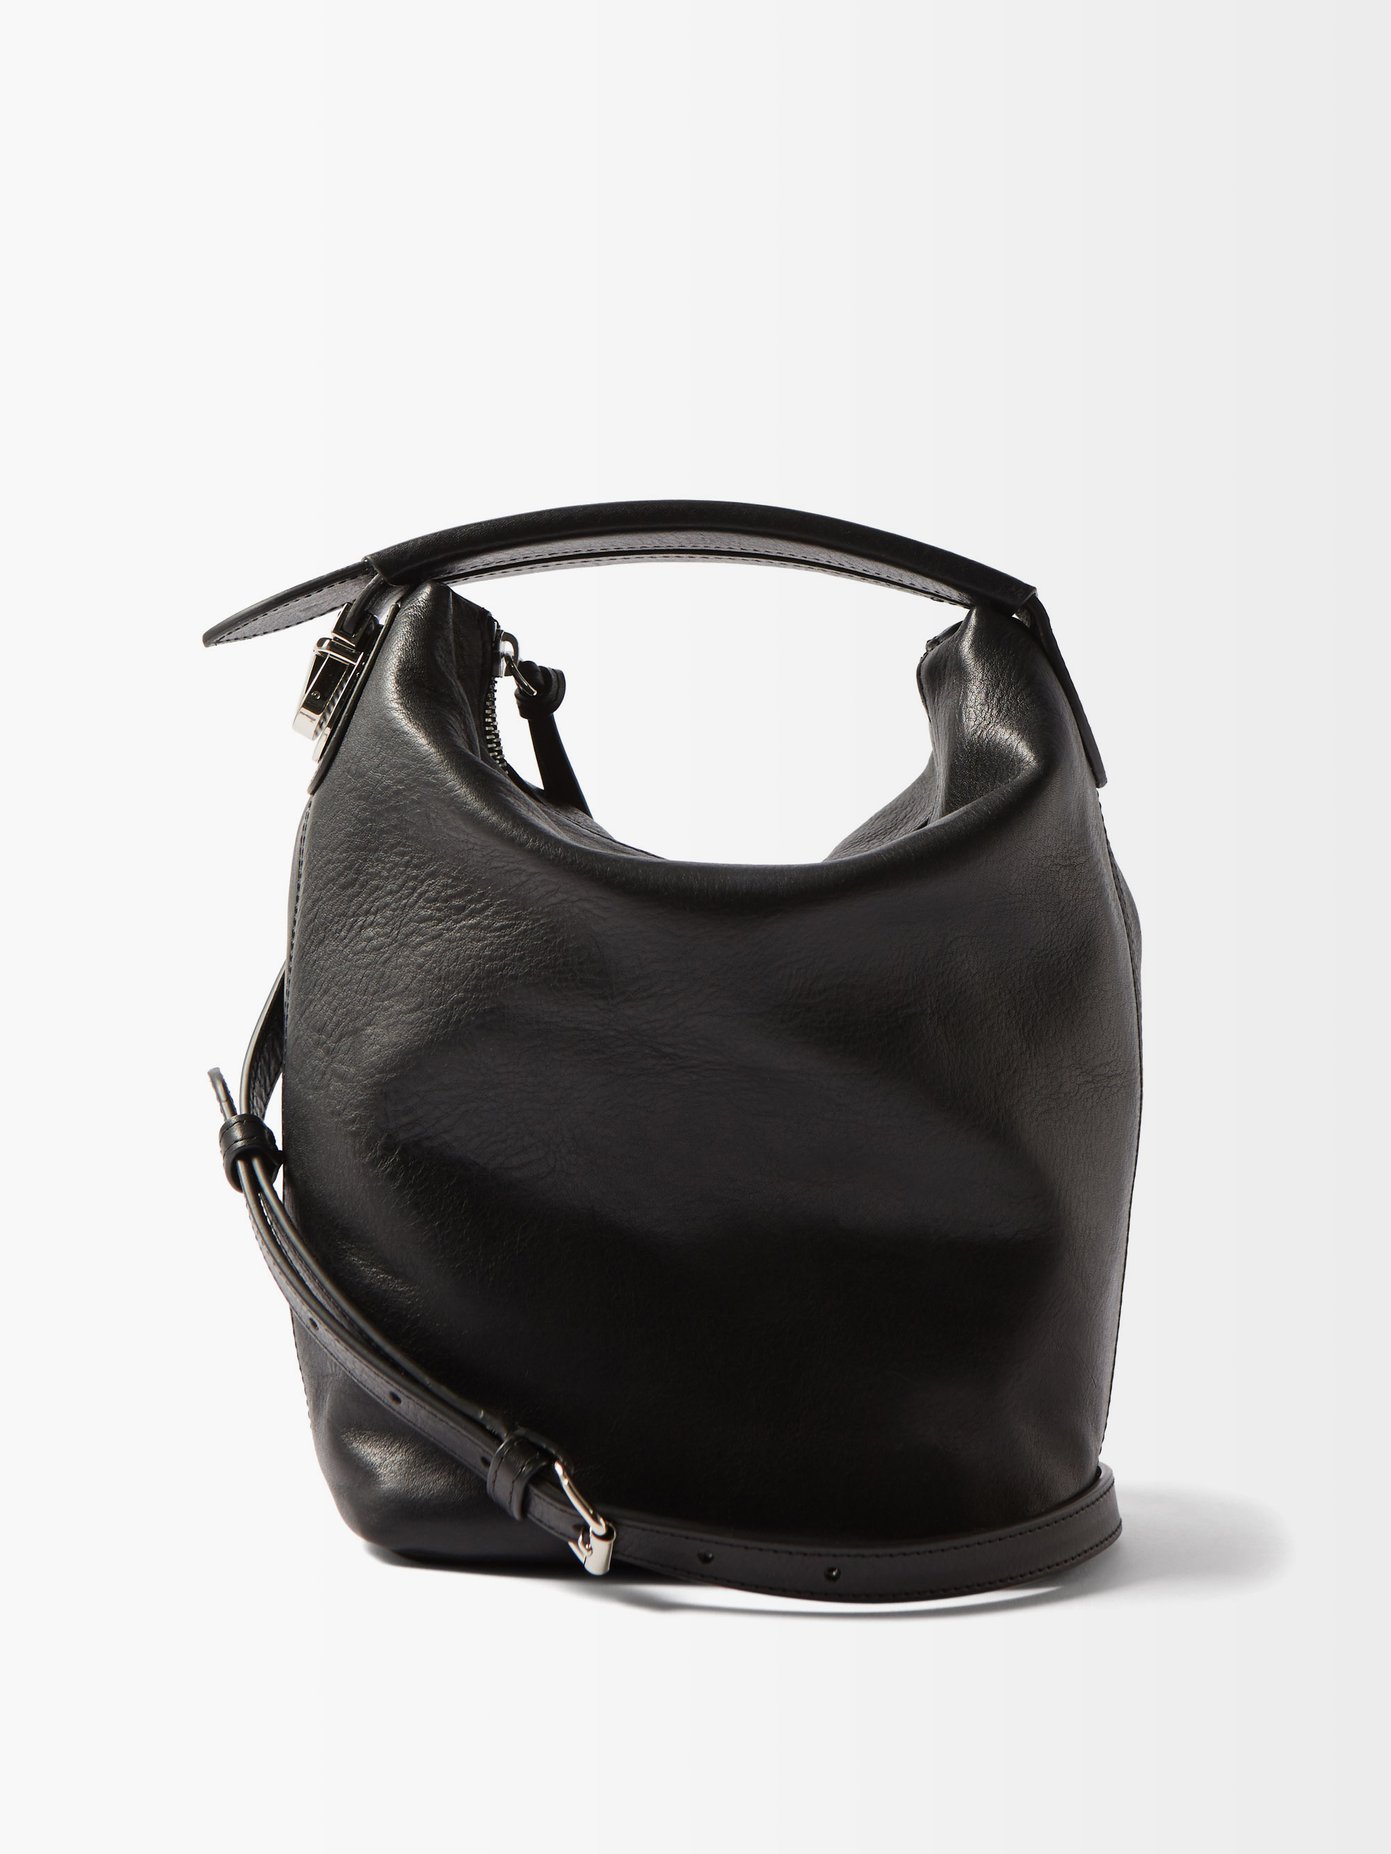 르메르 케이스백 - 블랙 Lemaire Black Case leather cross-body bag